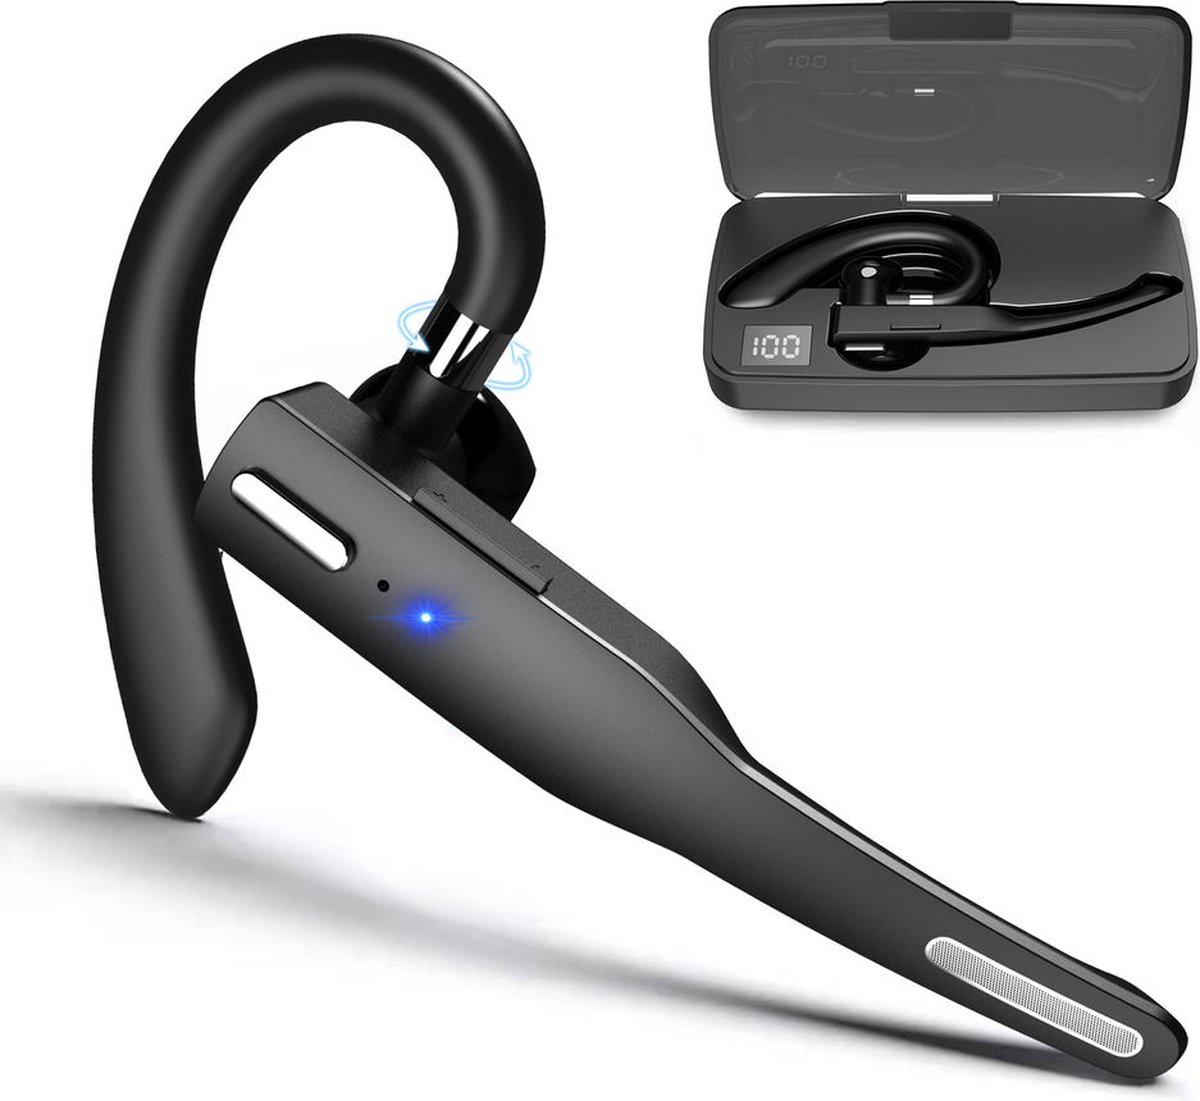 Otiume Draadloze Headset met Microfoon – Noise Canceling – Handsfree Bellen – Werkt als Bluetooth Headset voor elk apparaat